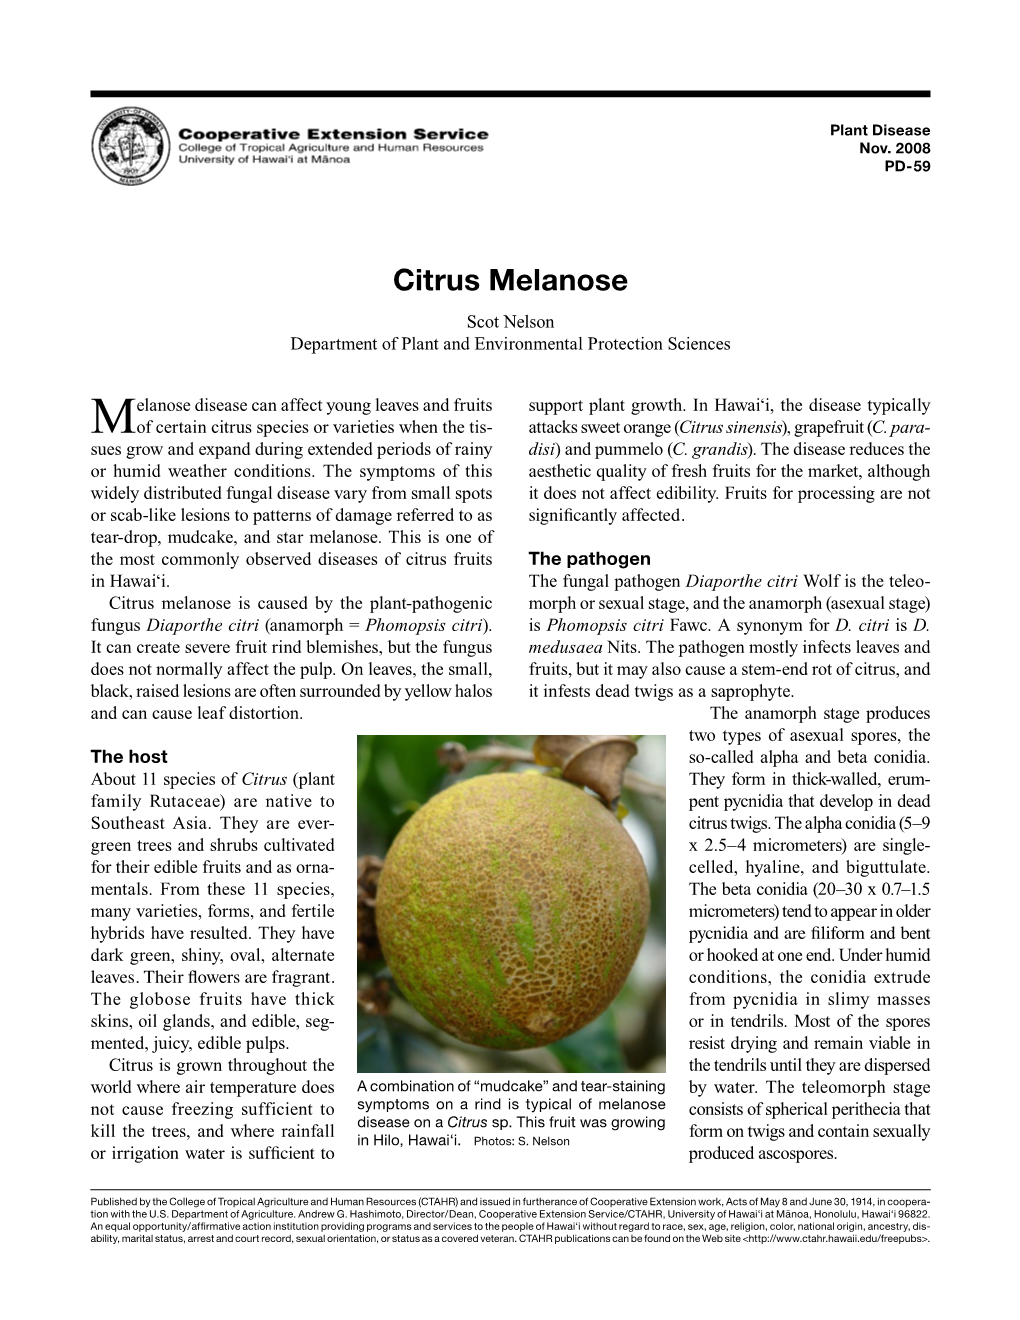 Citrus Melanose